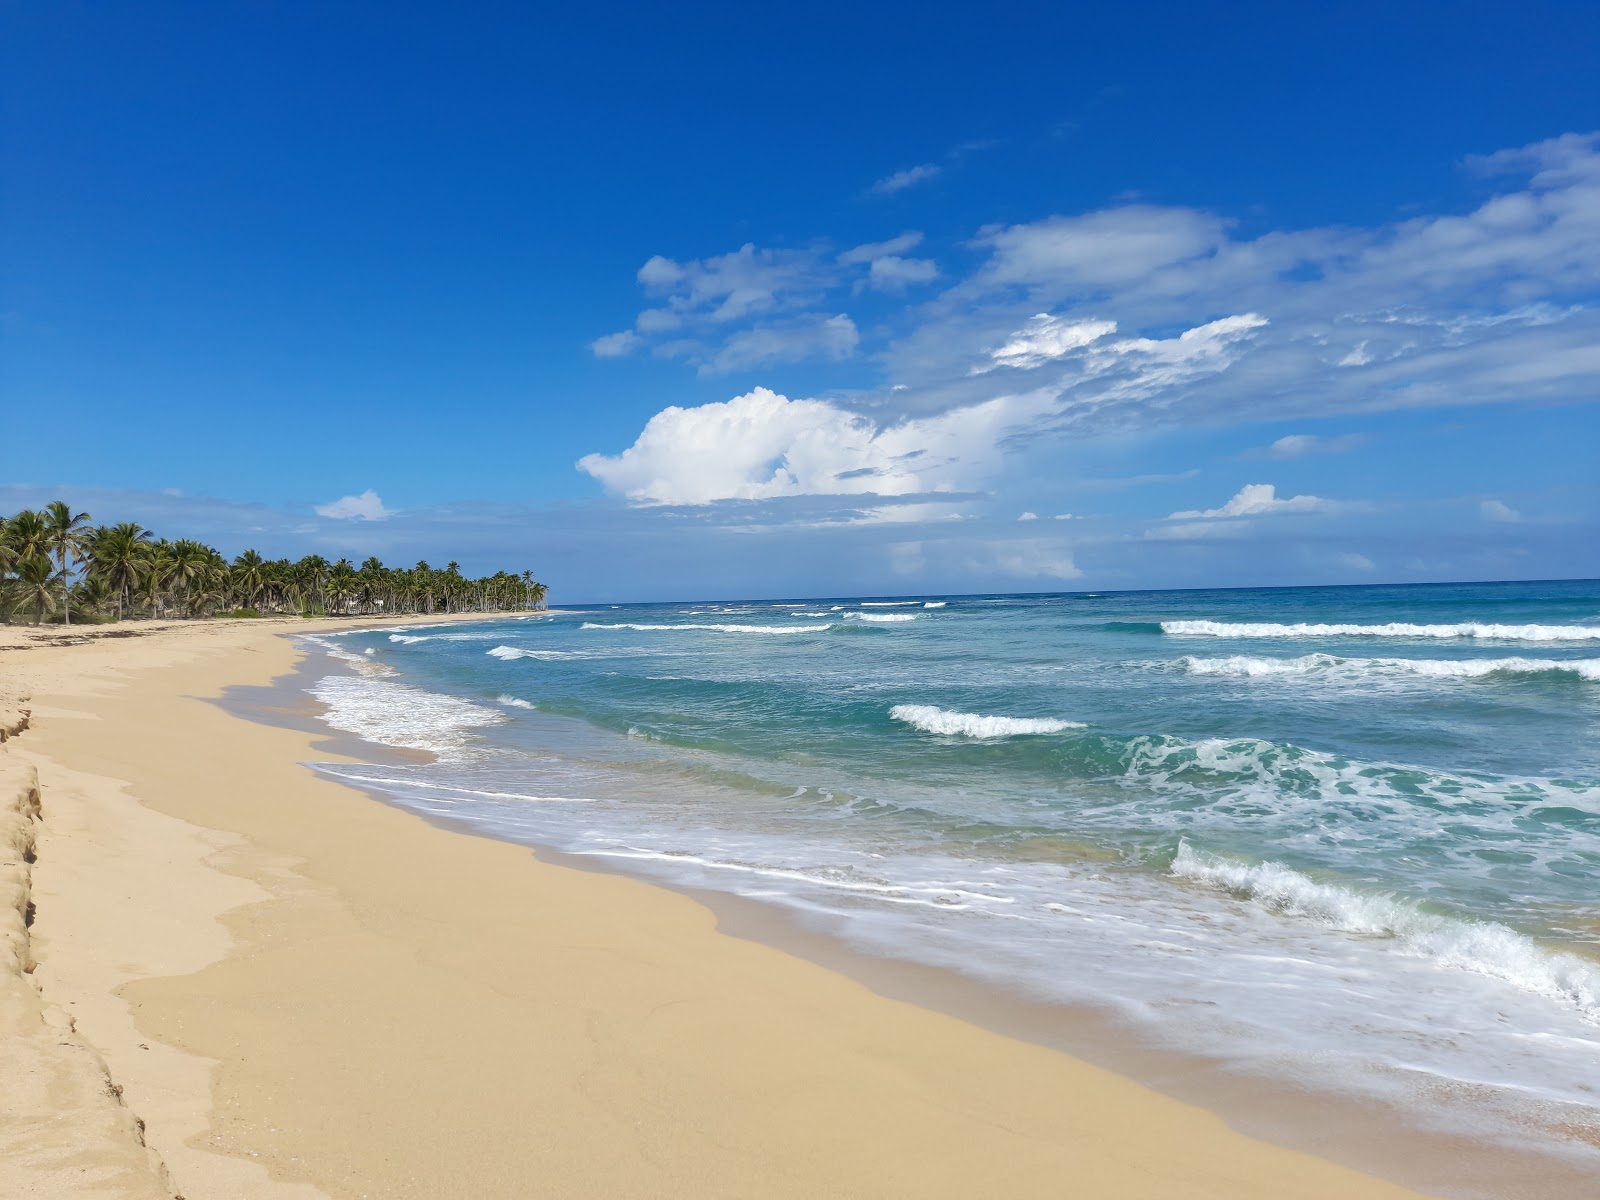 Escondida Plajı'in fotoğrafı parlak kum yüzey ile